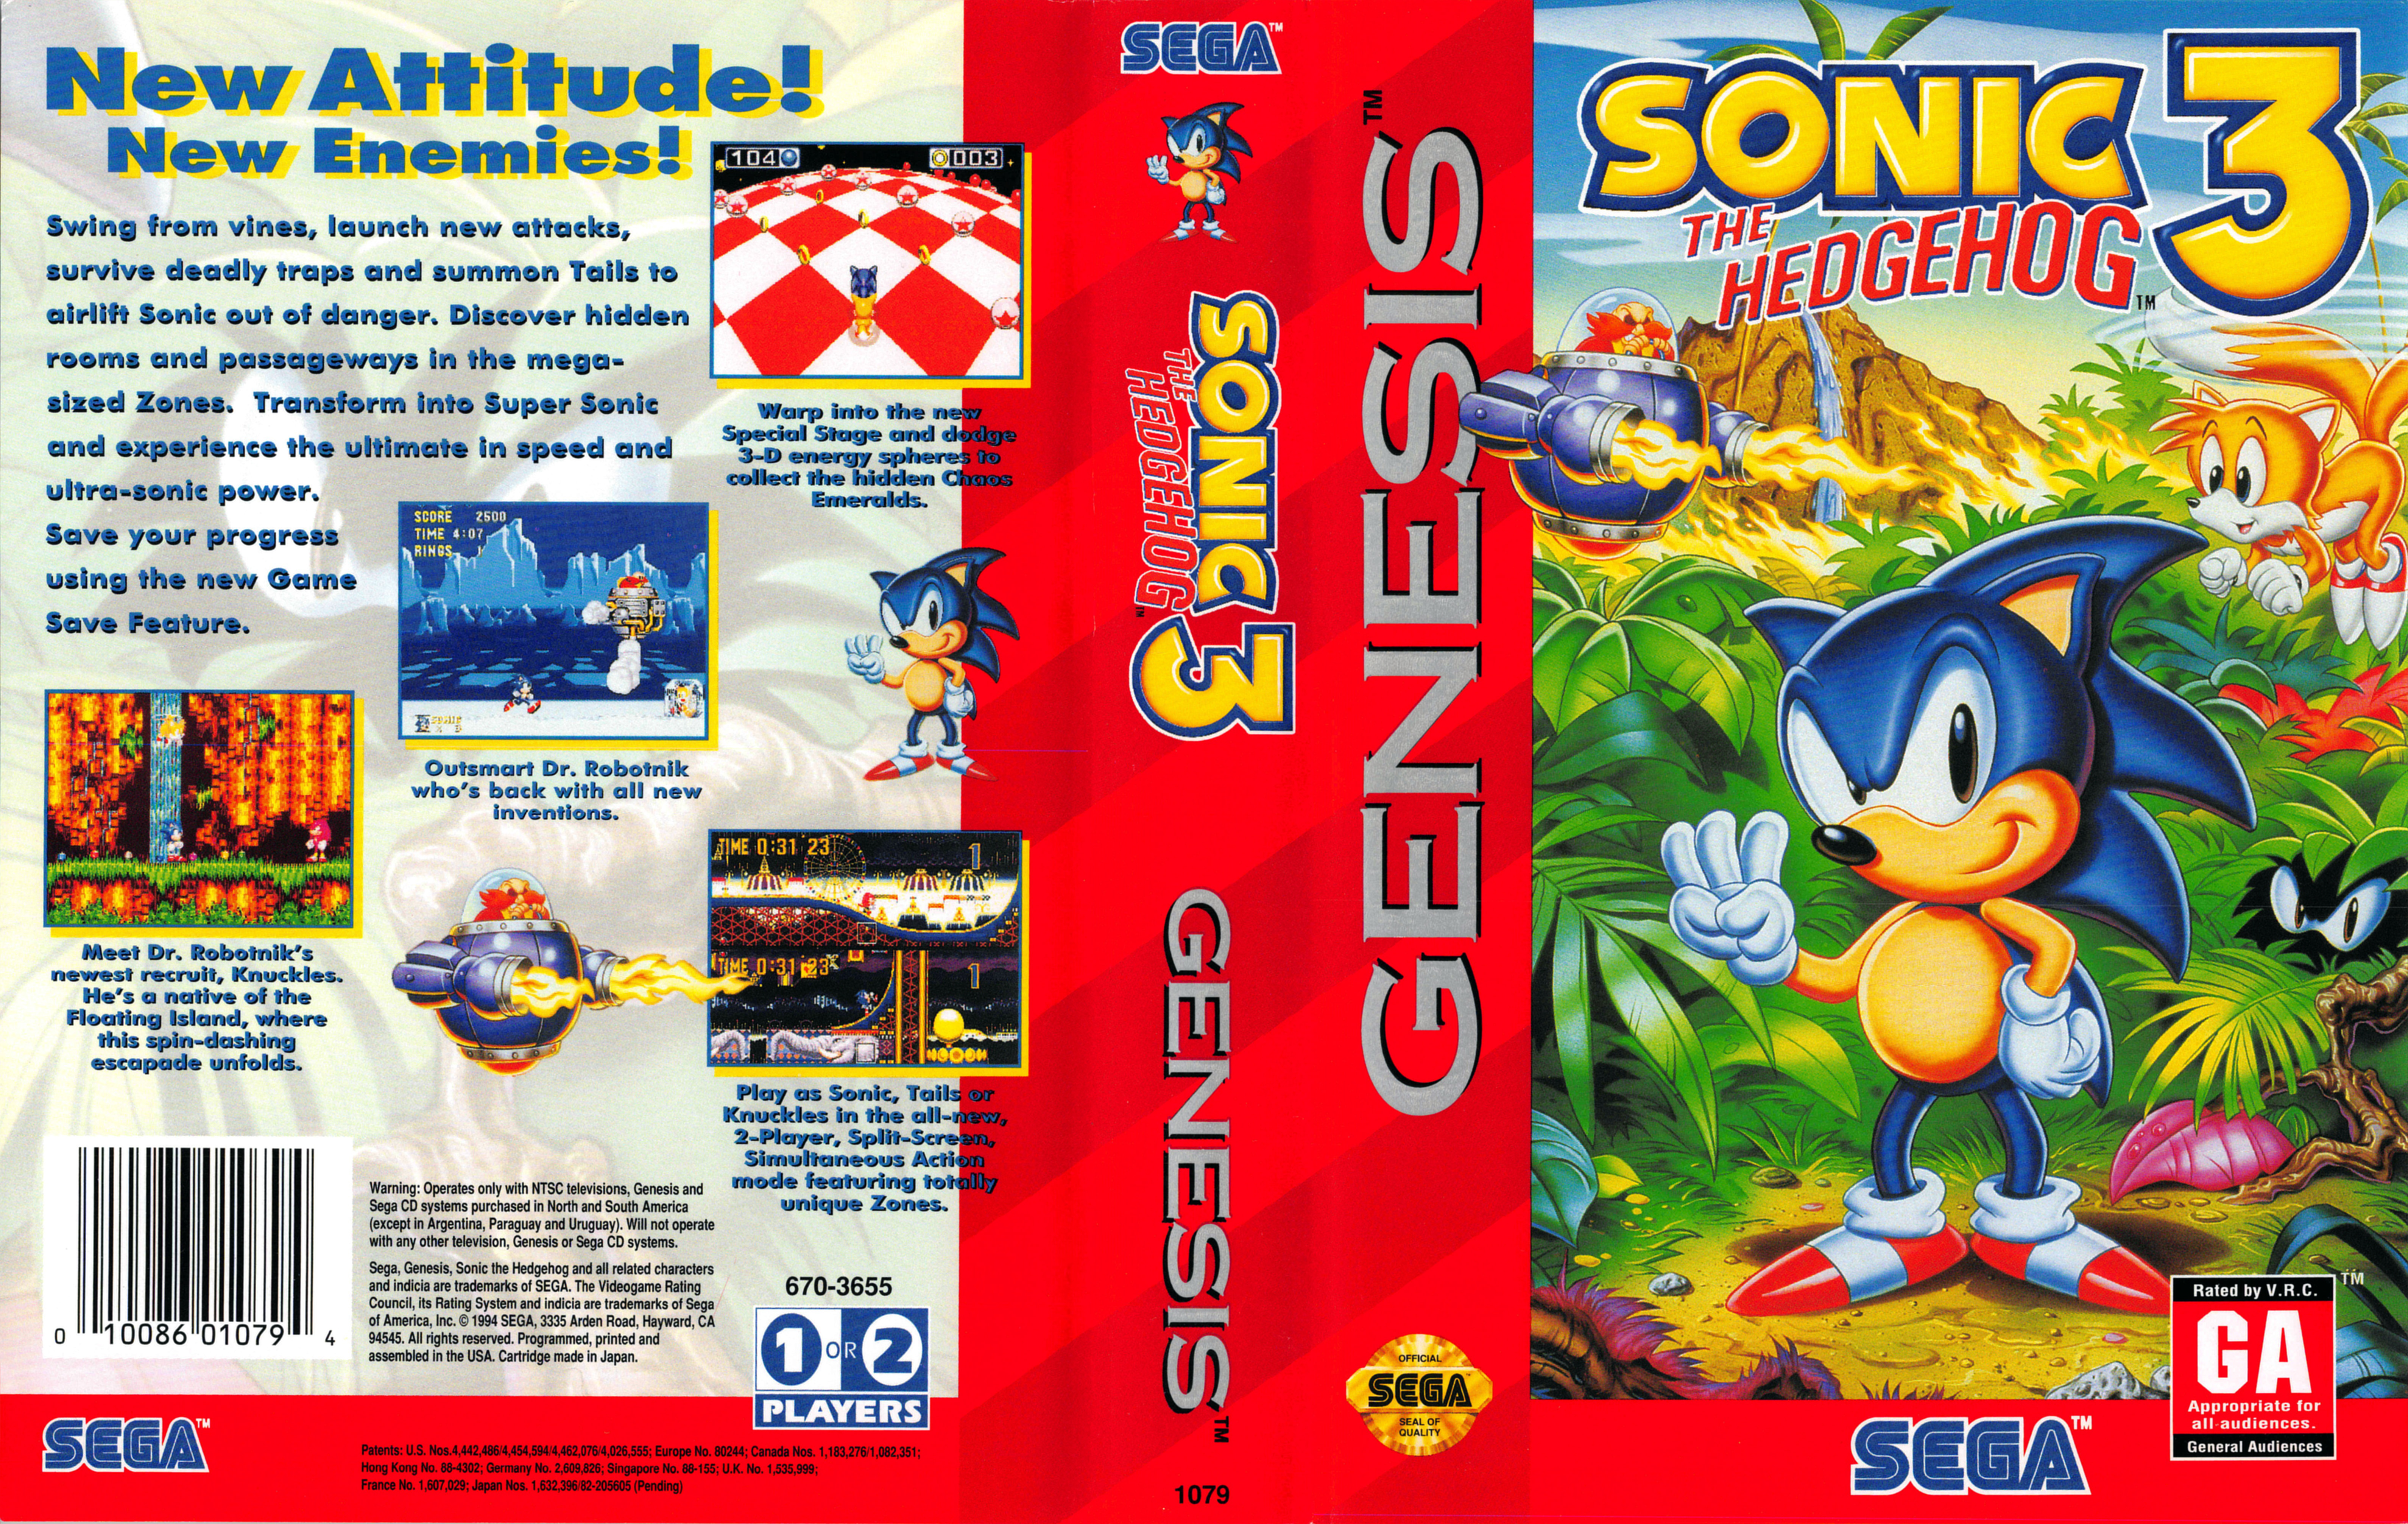 Sonic tab. Обложка Sonic 3 Mega Drive. Sonic 3 Sega Mega Drive. Sega Mega Drive 2 Sonic 3. Sonic the Hedgehog 3 обложка.